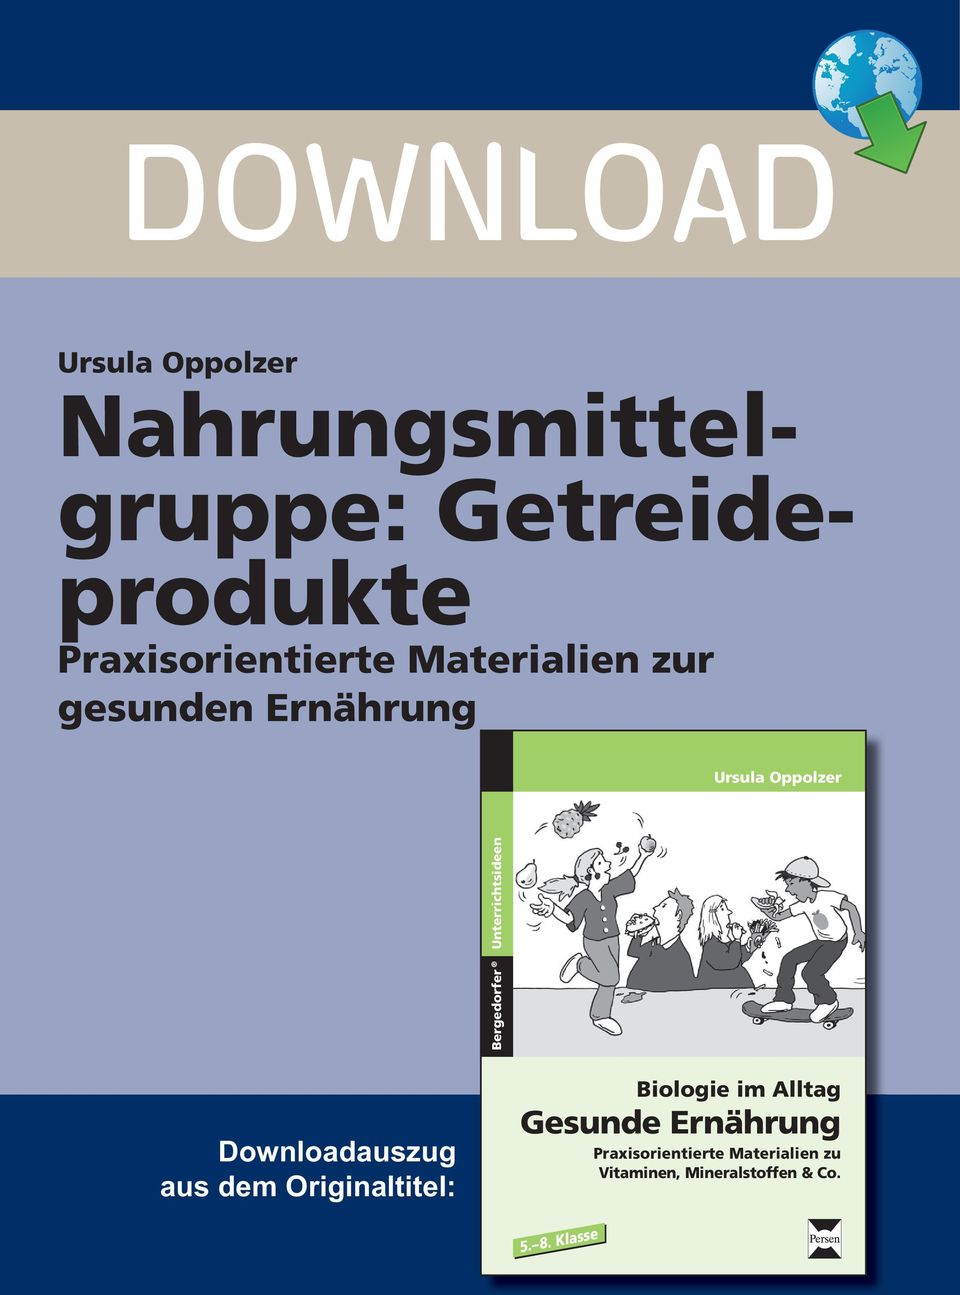 Bergedorfer Unterrichtsideen Downloadauszug aus dem Originaltitel: Biologie im